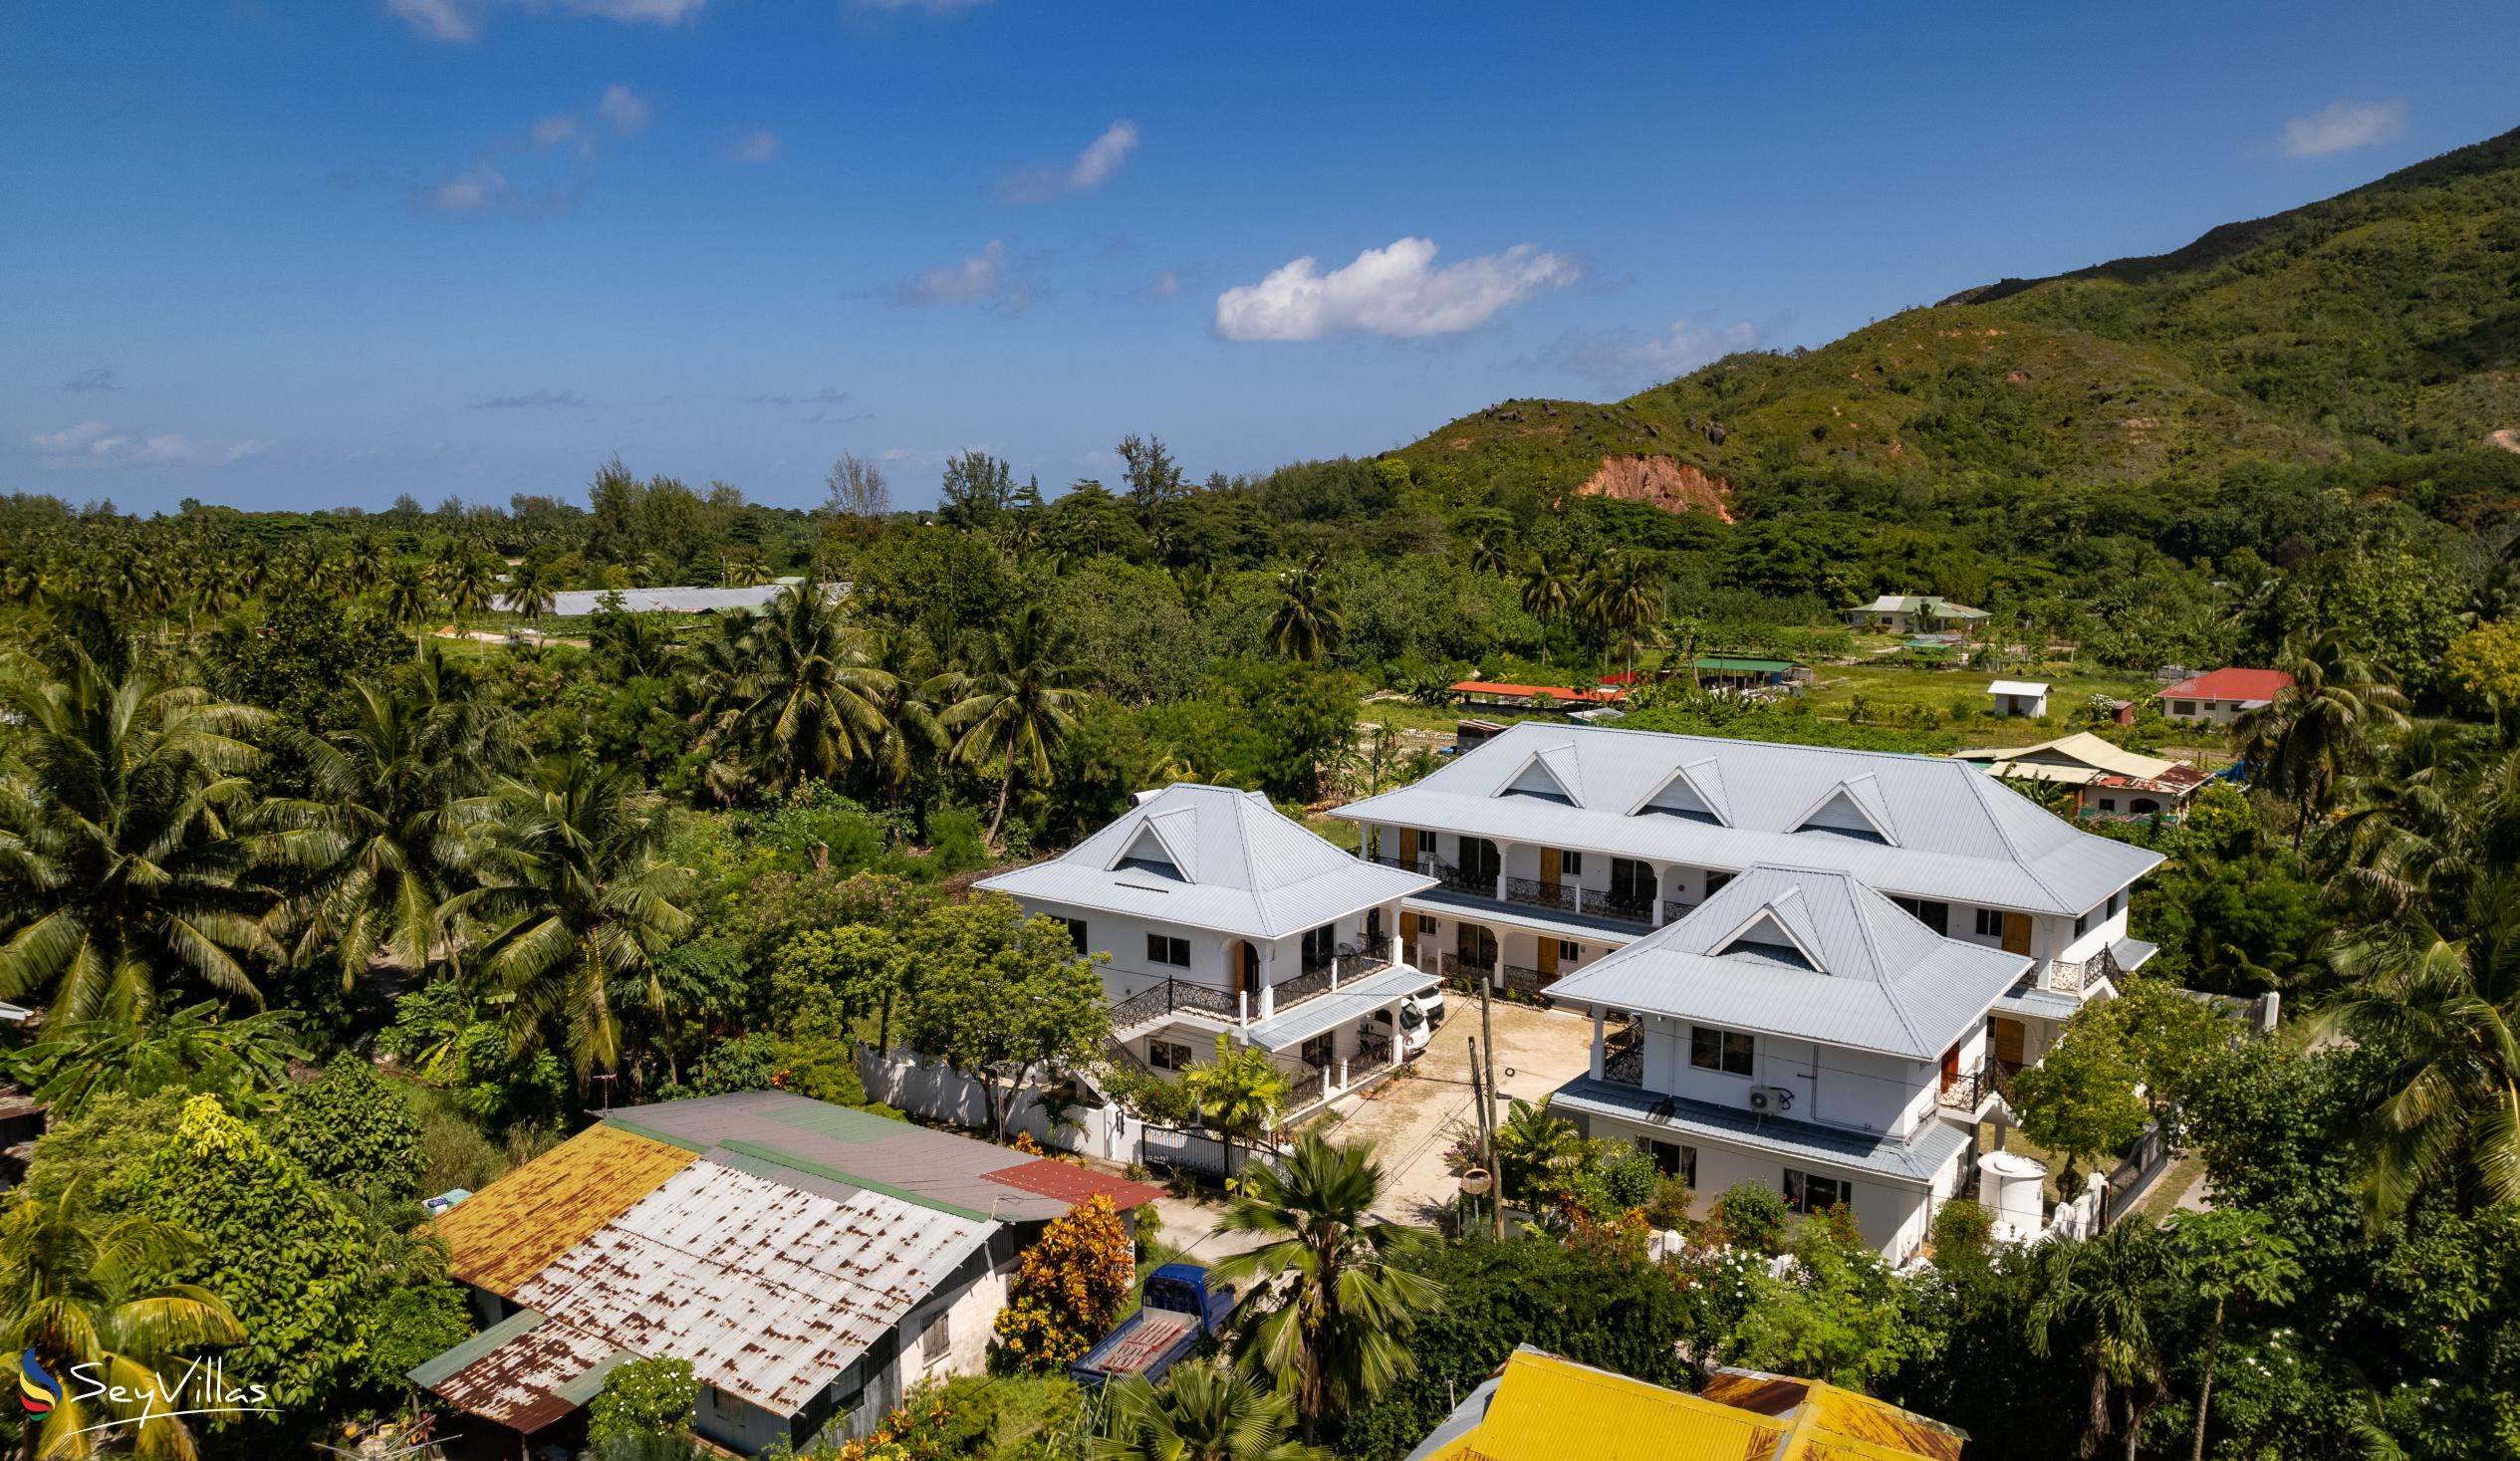 Foto 14: Casadani Luxury Guest House - Aussenbereich - Praslin (Seychellen)